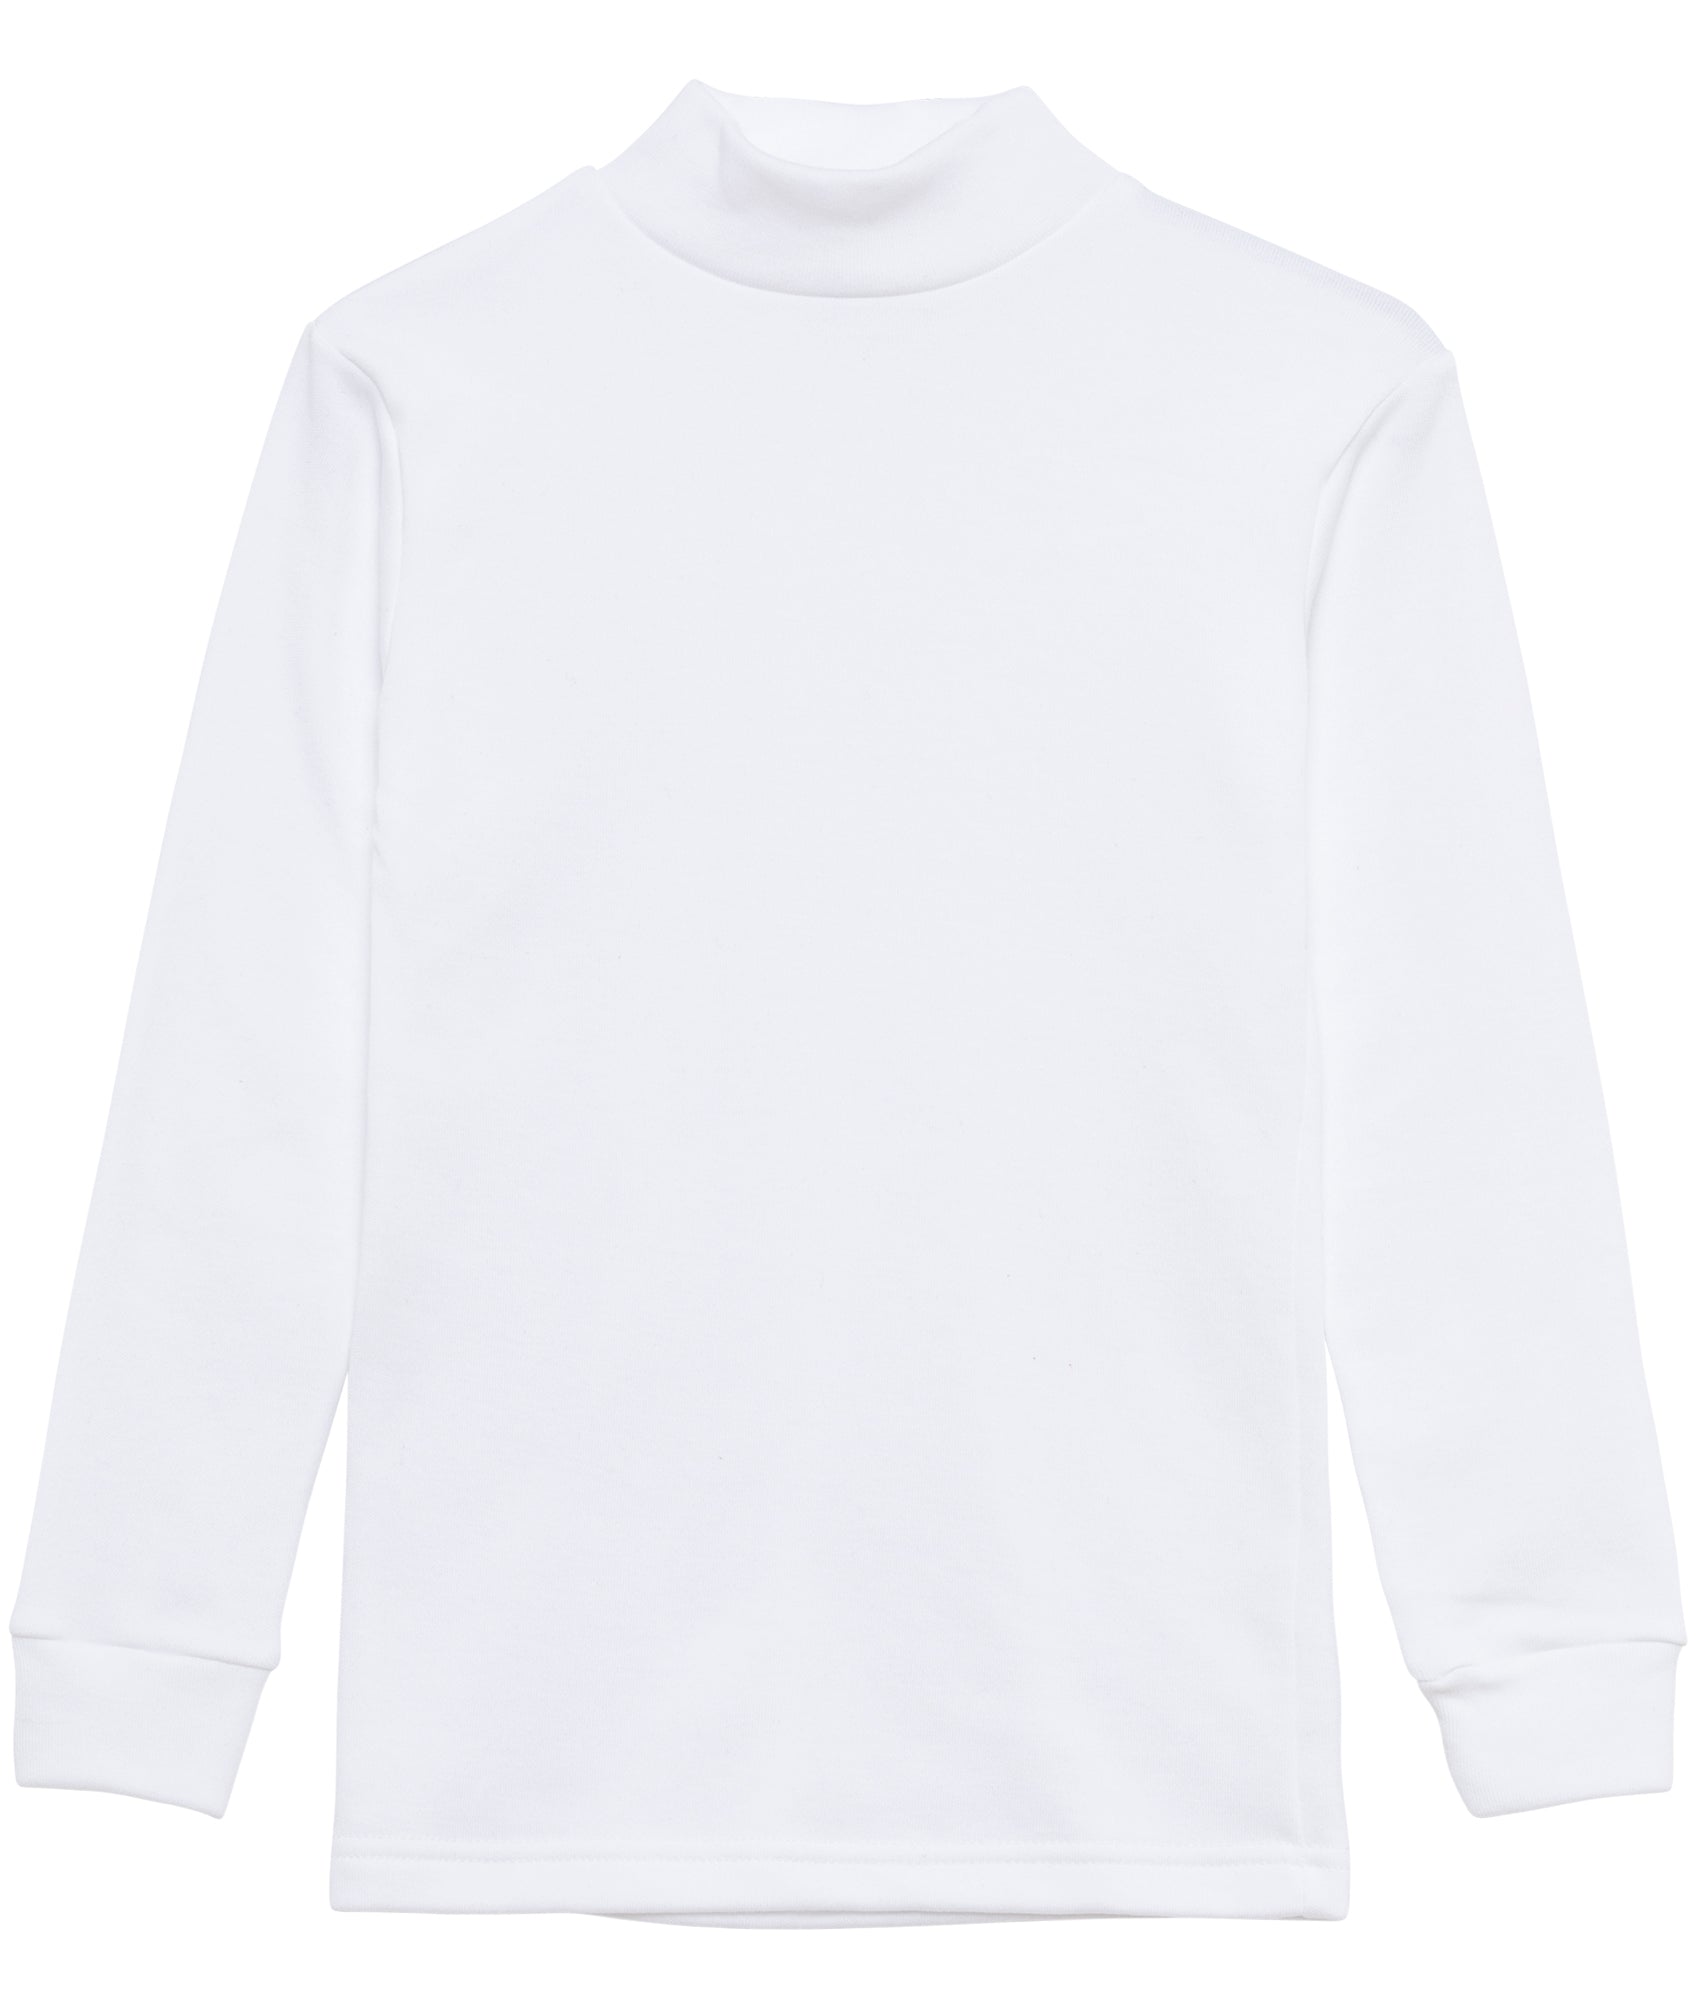 Camiseta termica interior cuello medio alto semi cisne niño manga – Channo